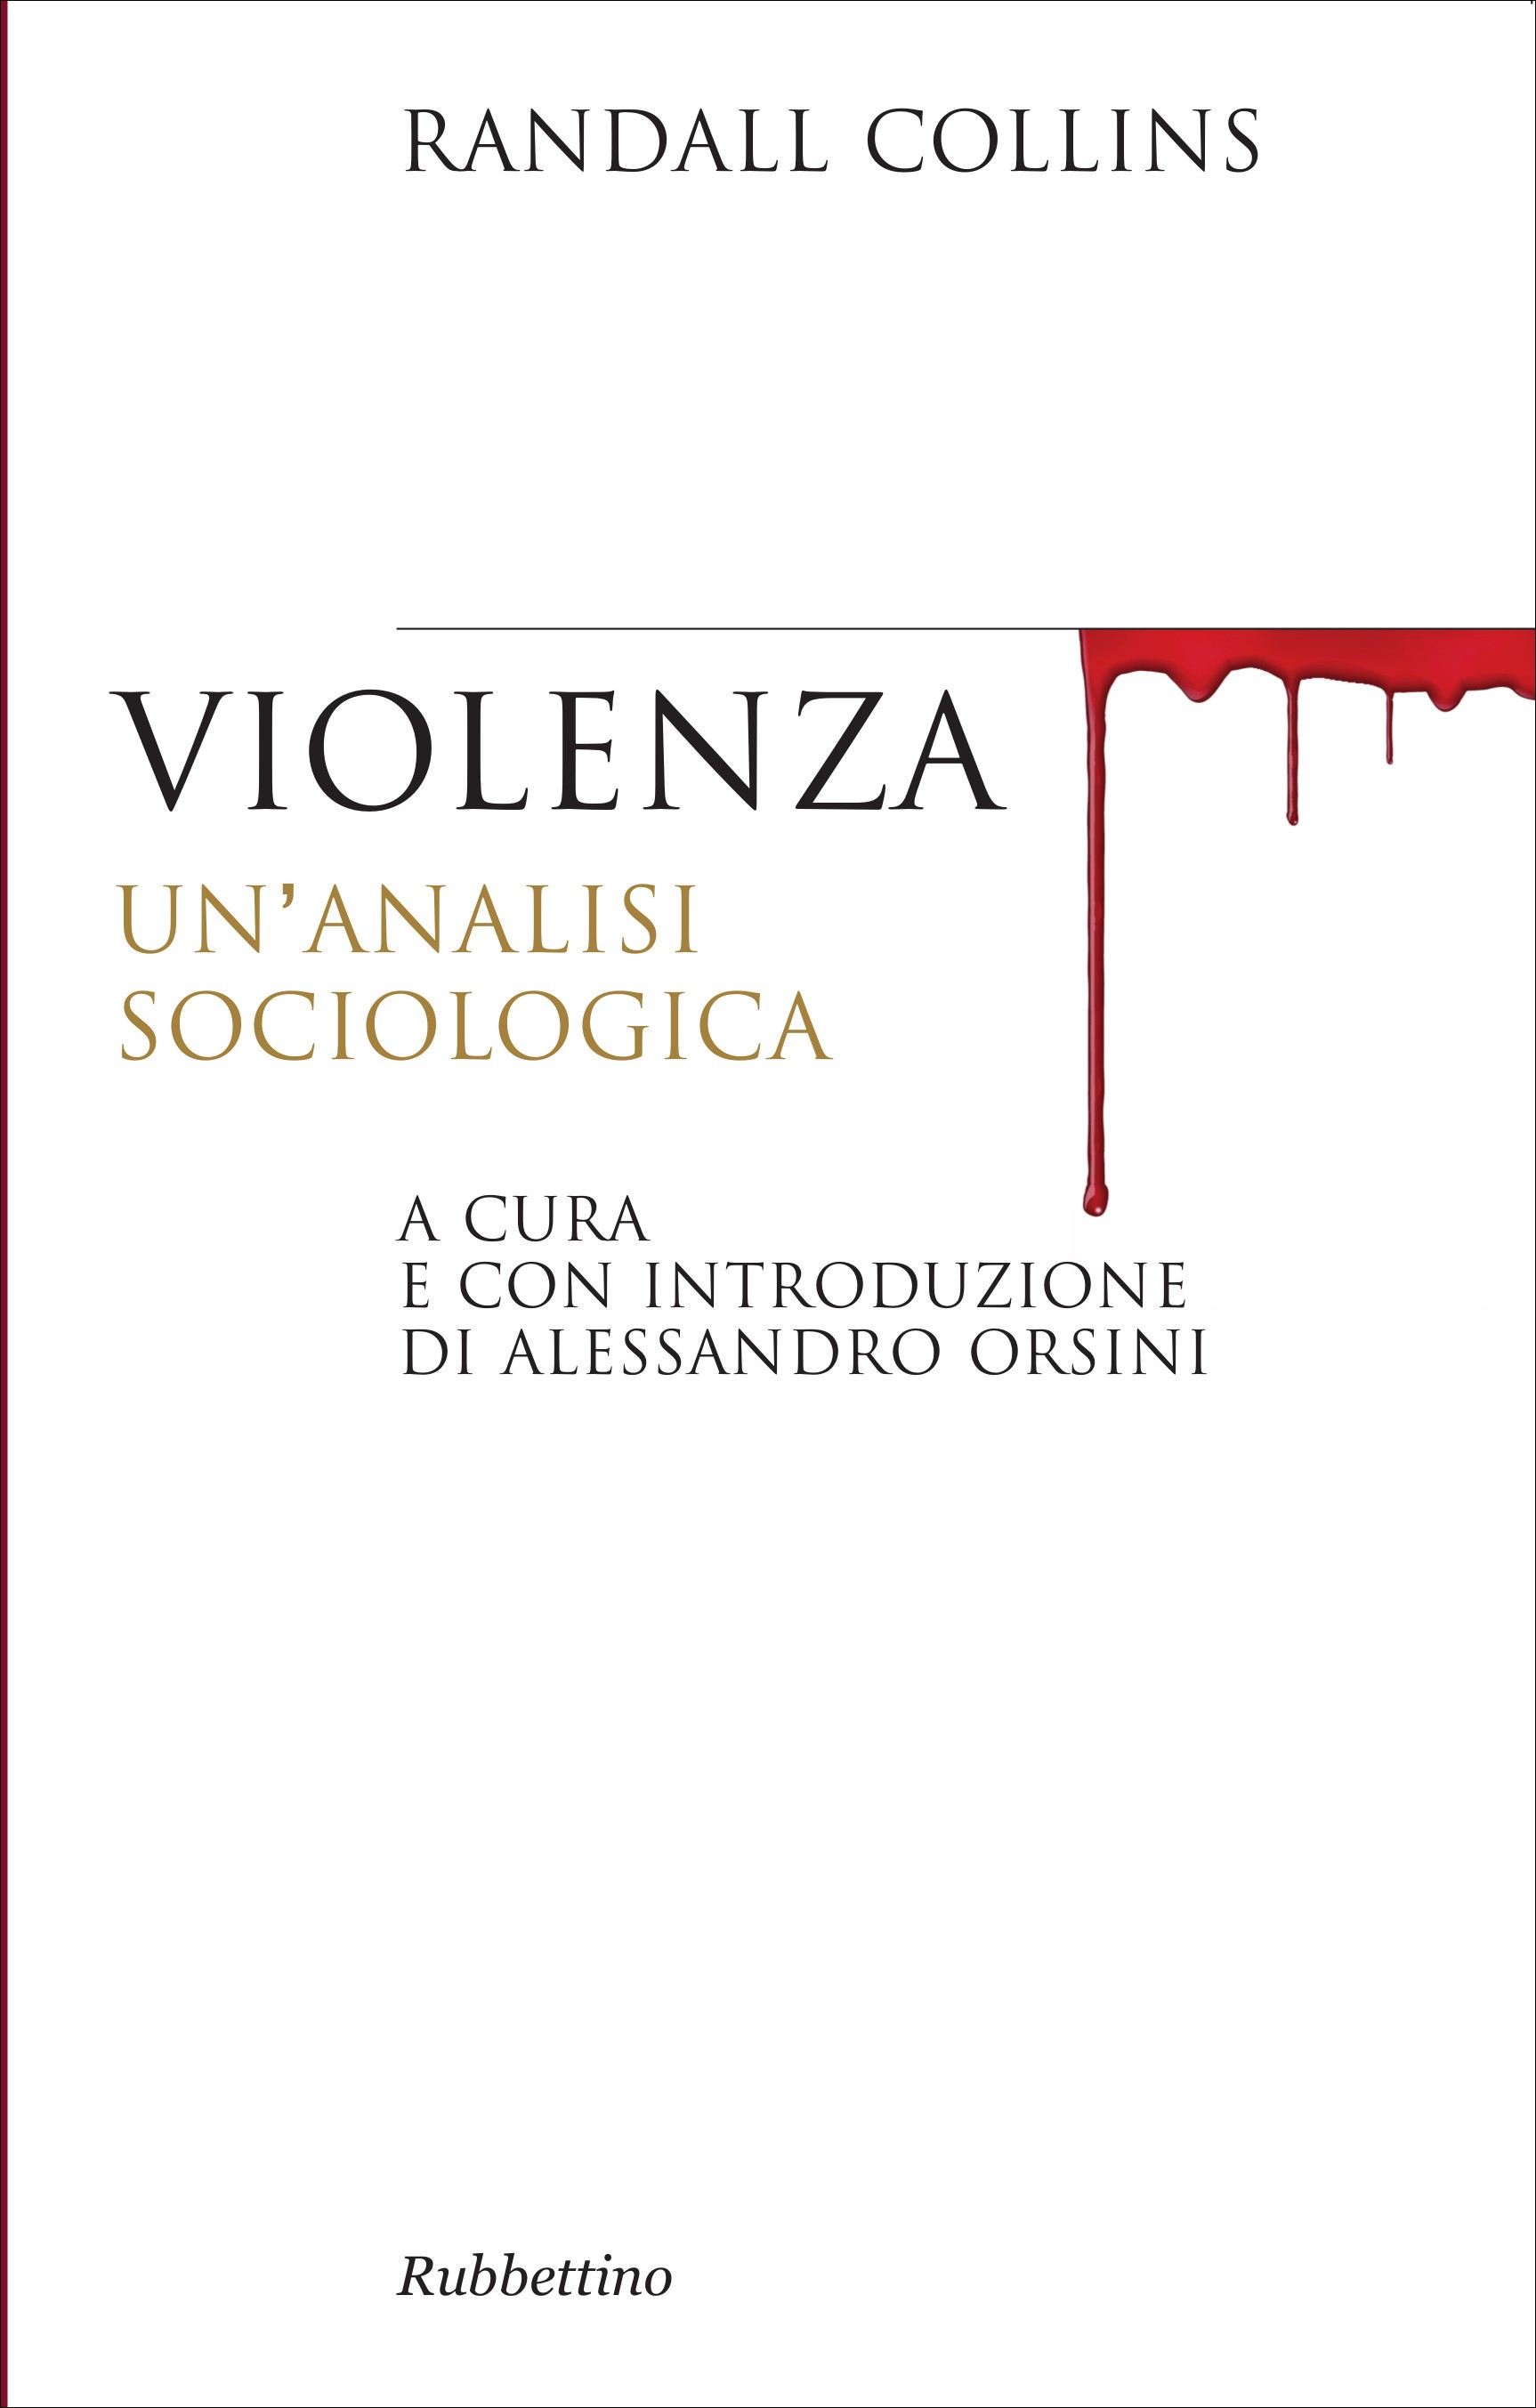 Violenza - Librerie.coop